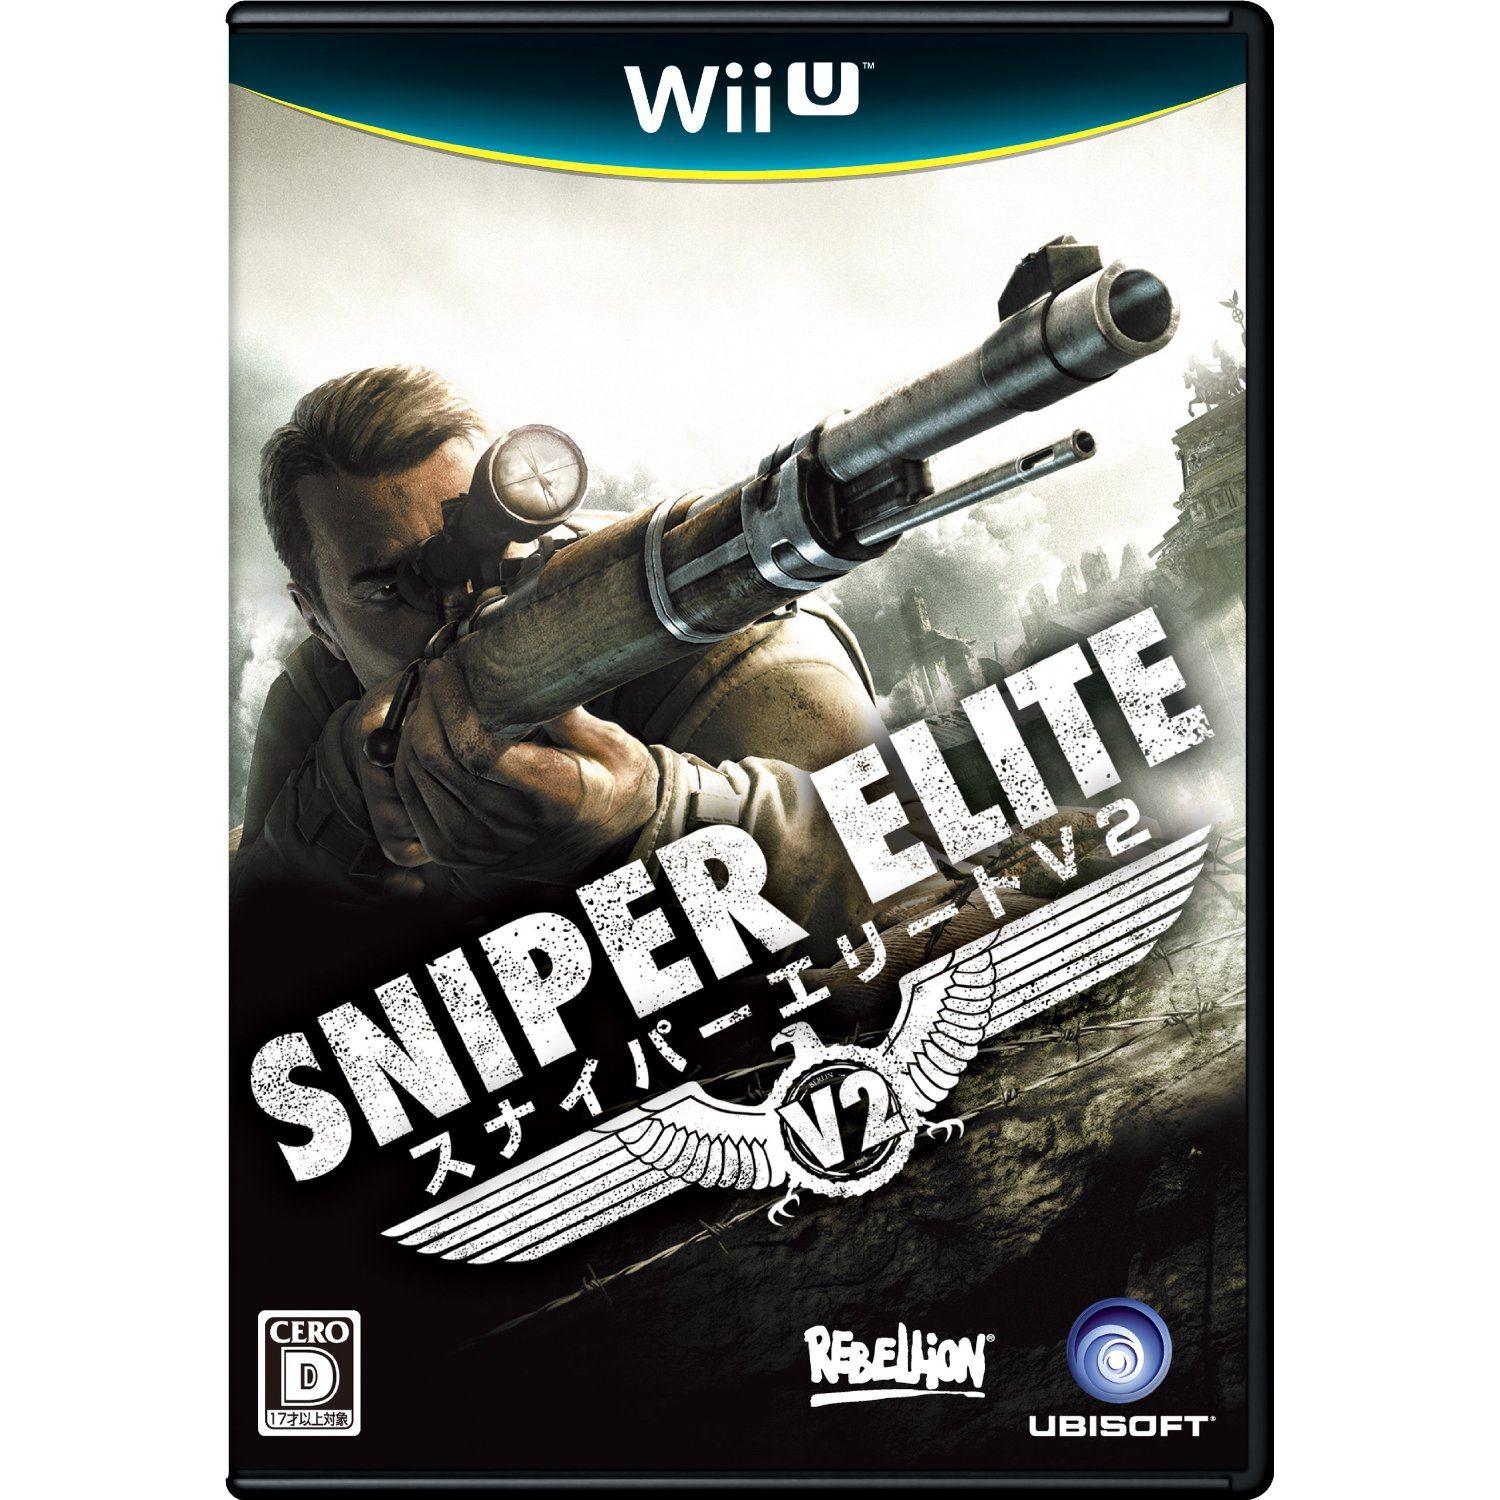 sniper elite v2 ps3 cheats